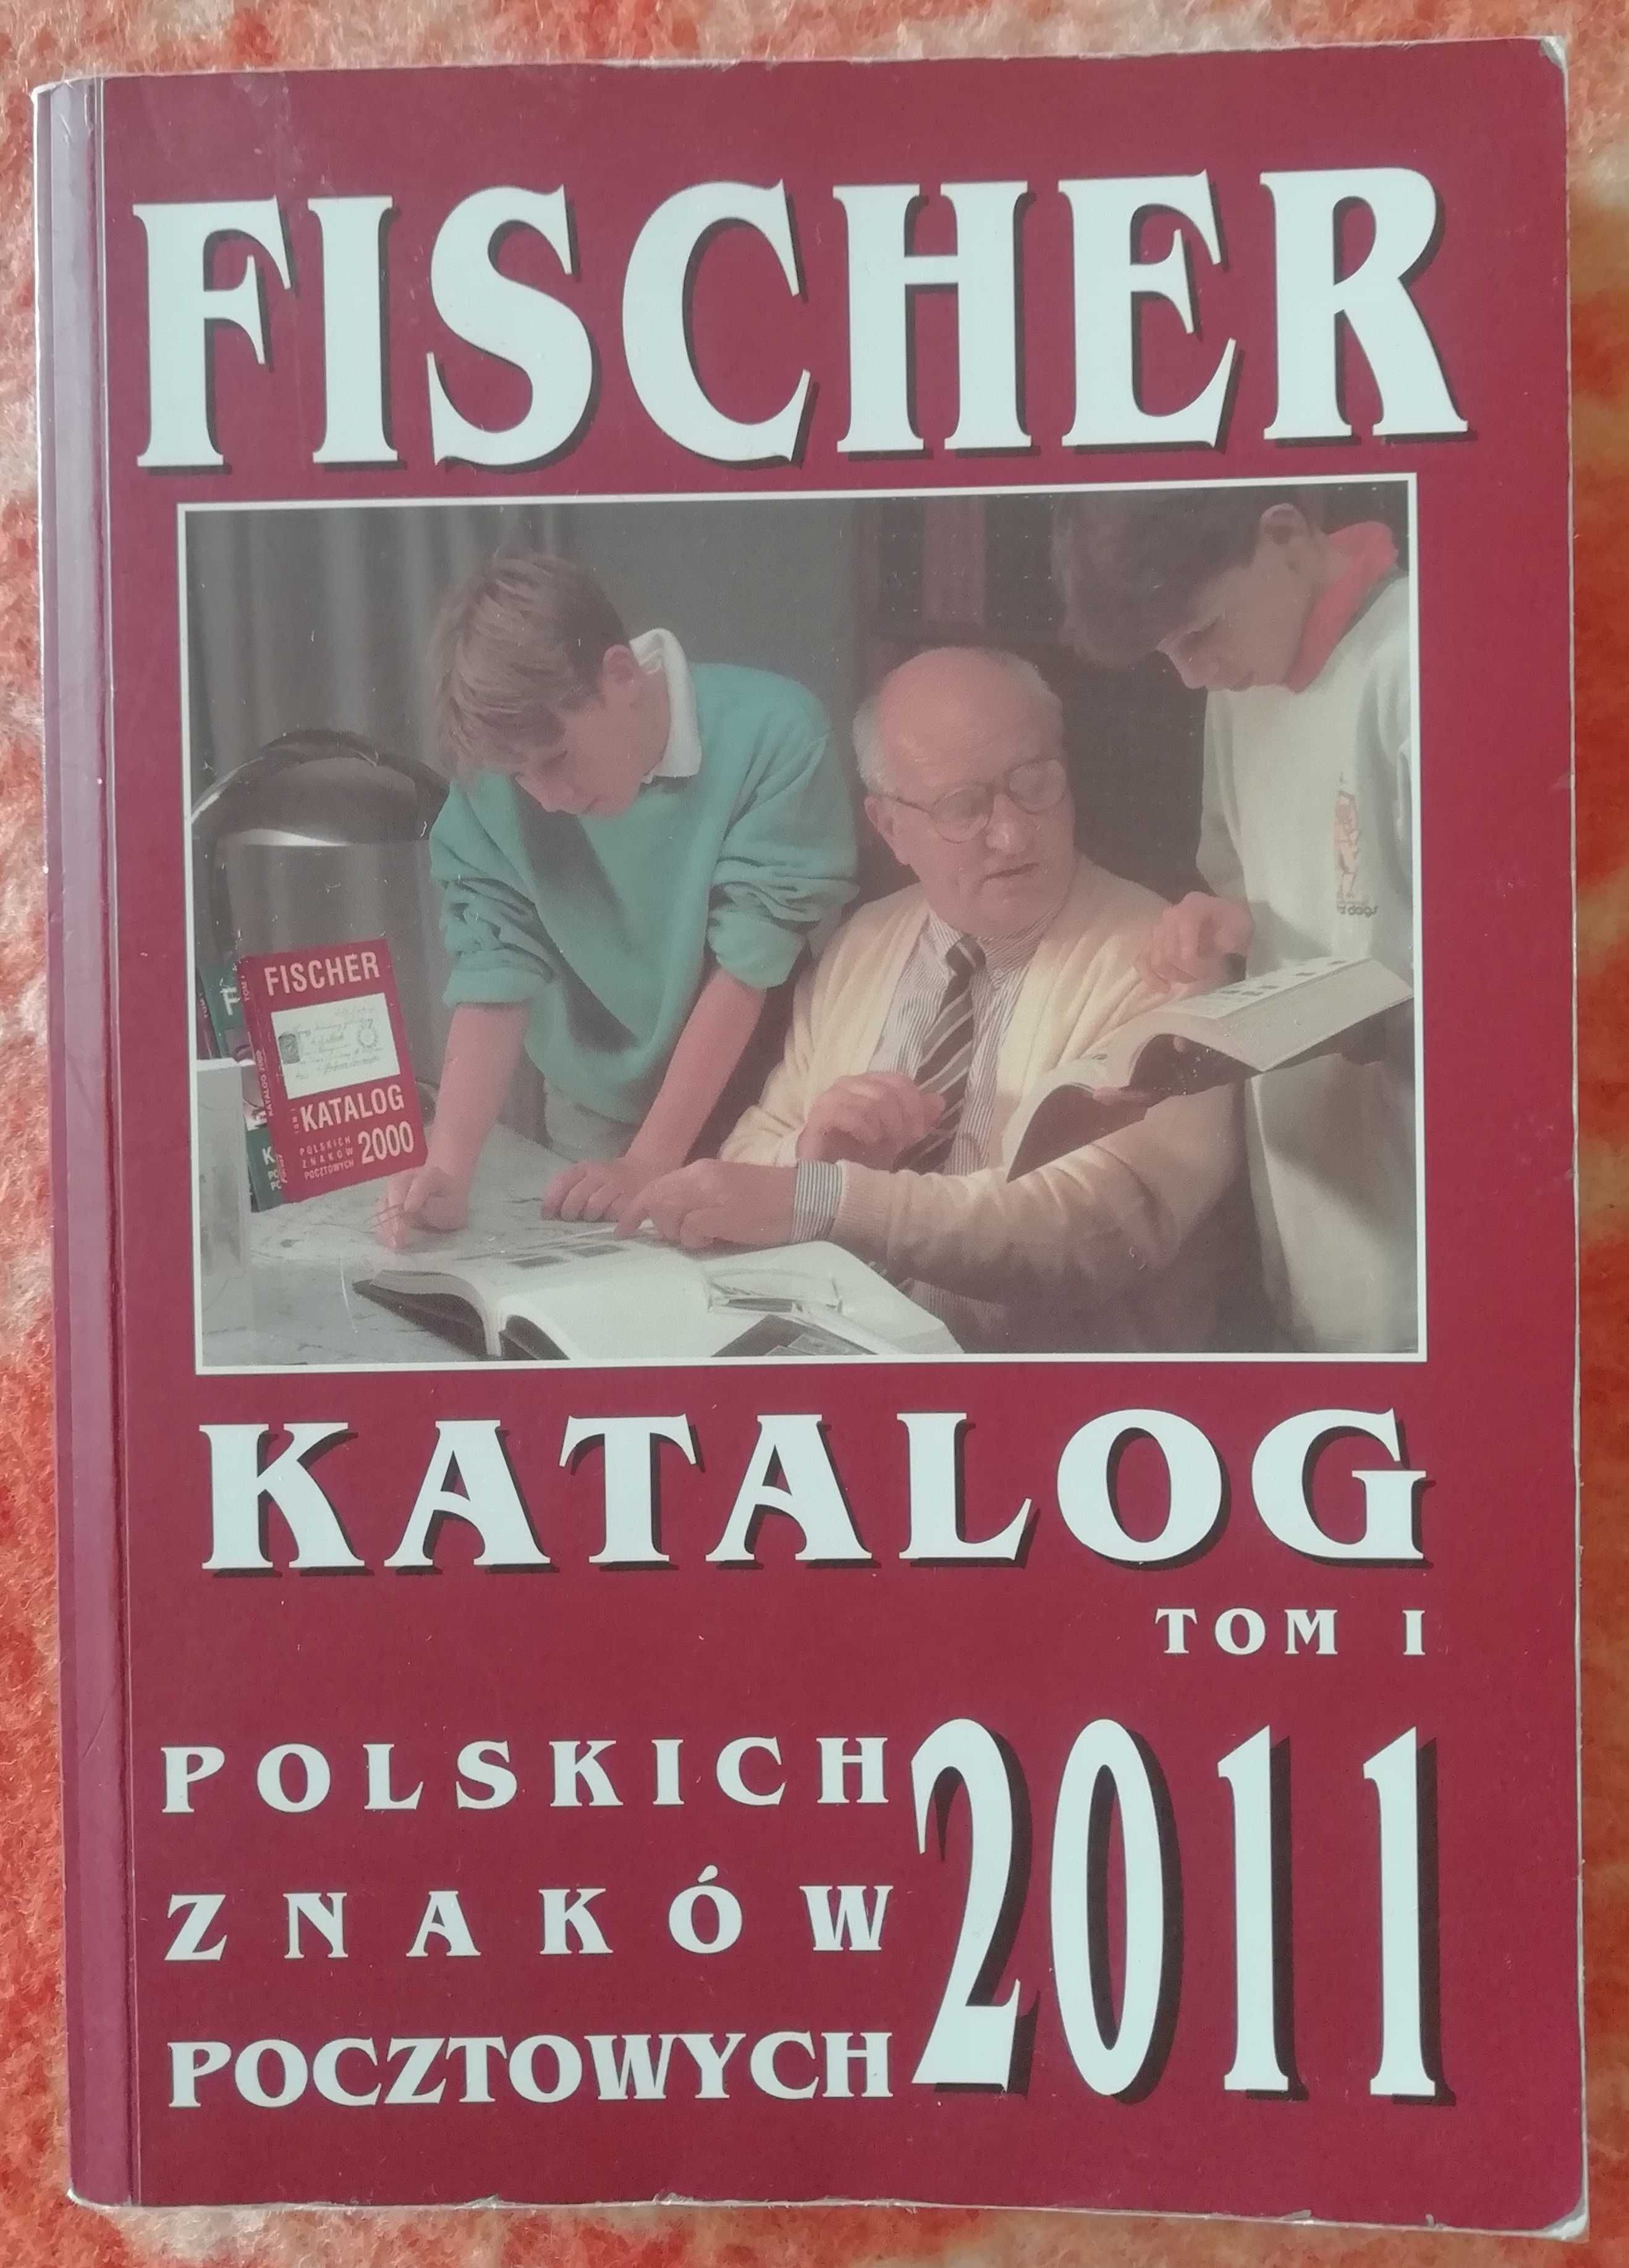 FISCHER Katalog Polskich Znaków Pocztowych 2011 Tom 1